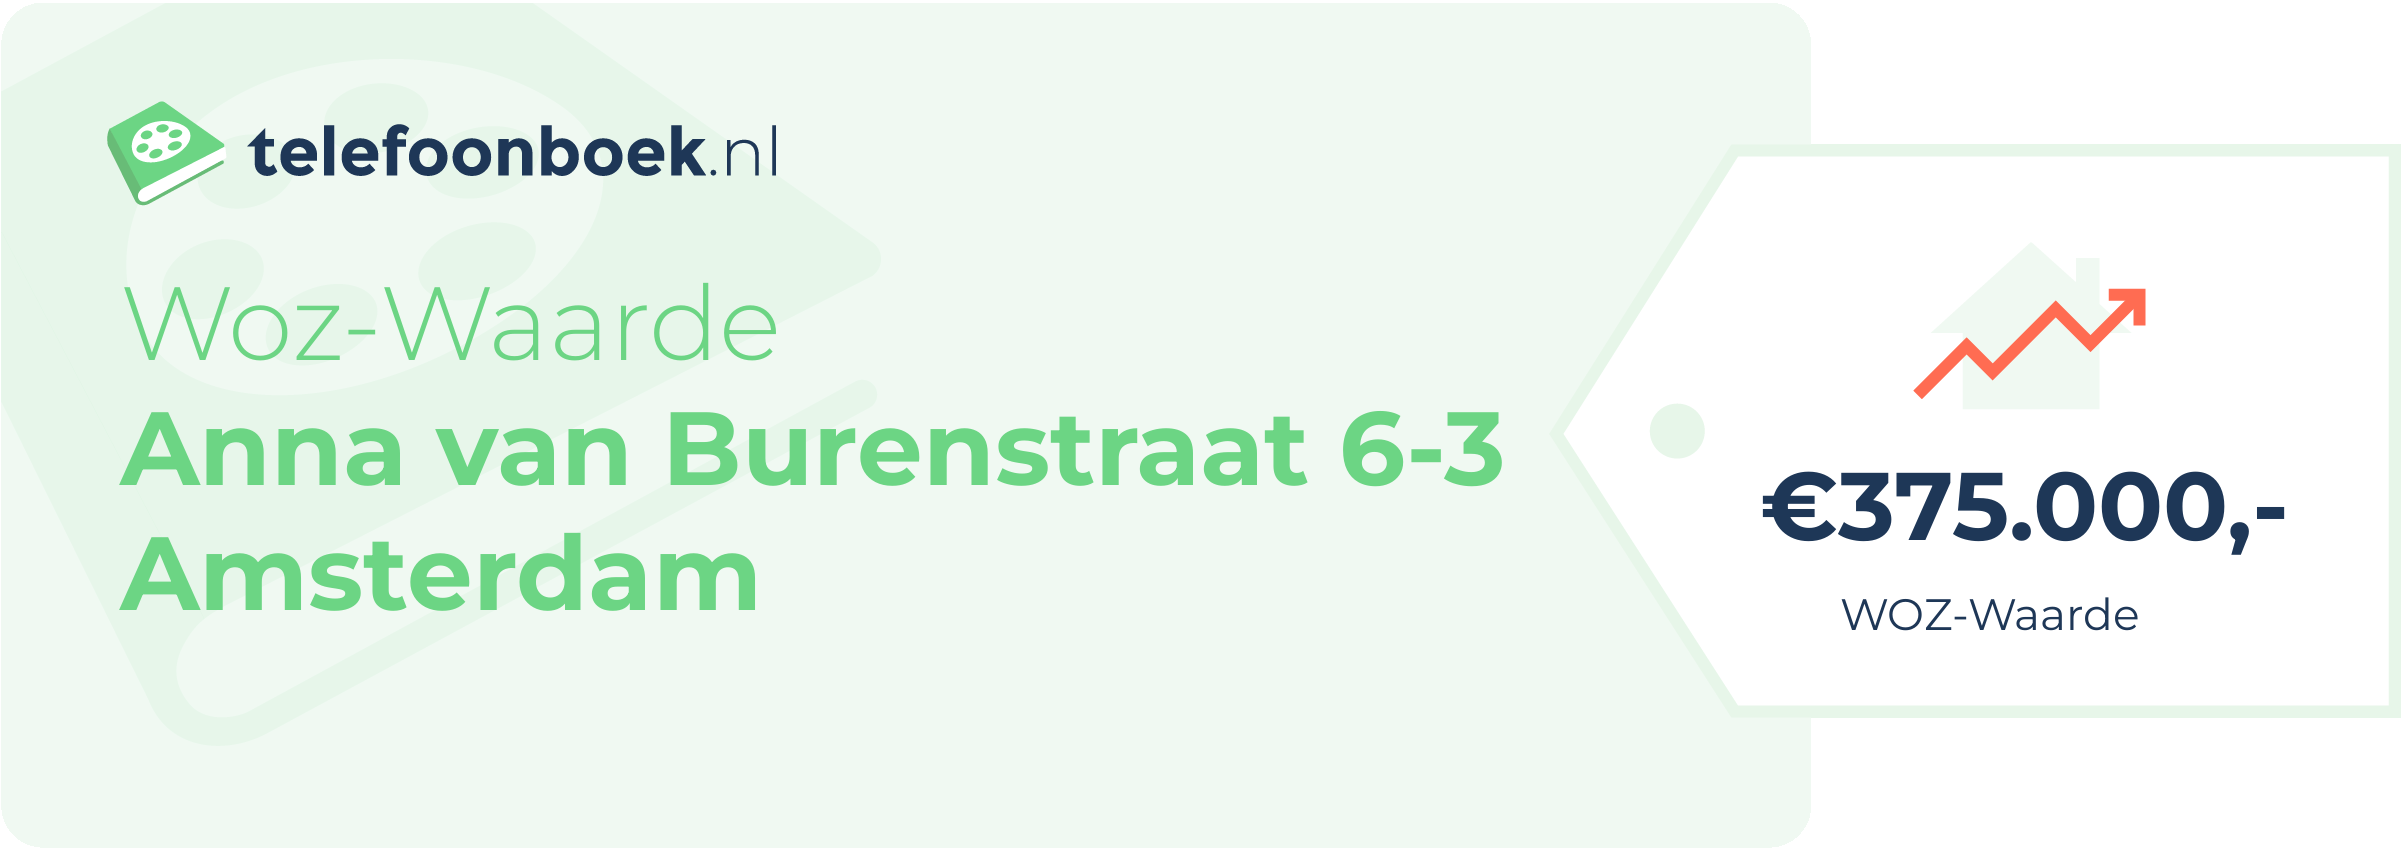 WOZ-waarde Anna Van Burenstraat 6-3 Amsterdam